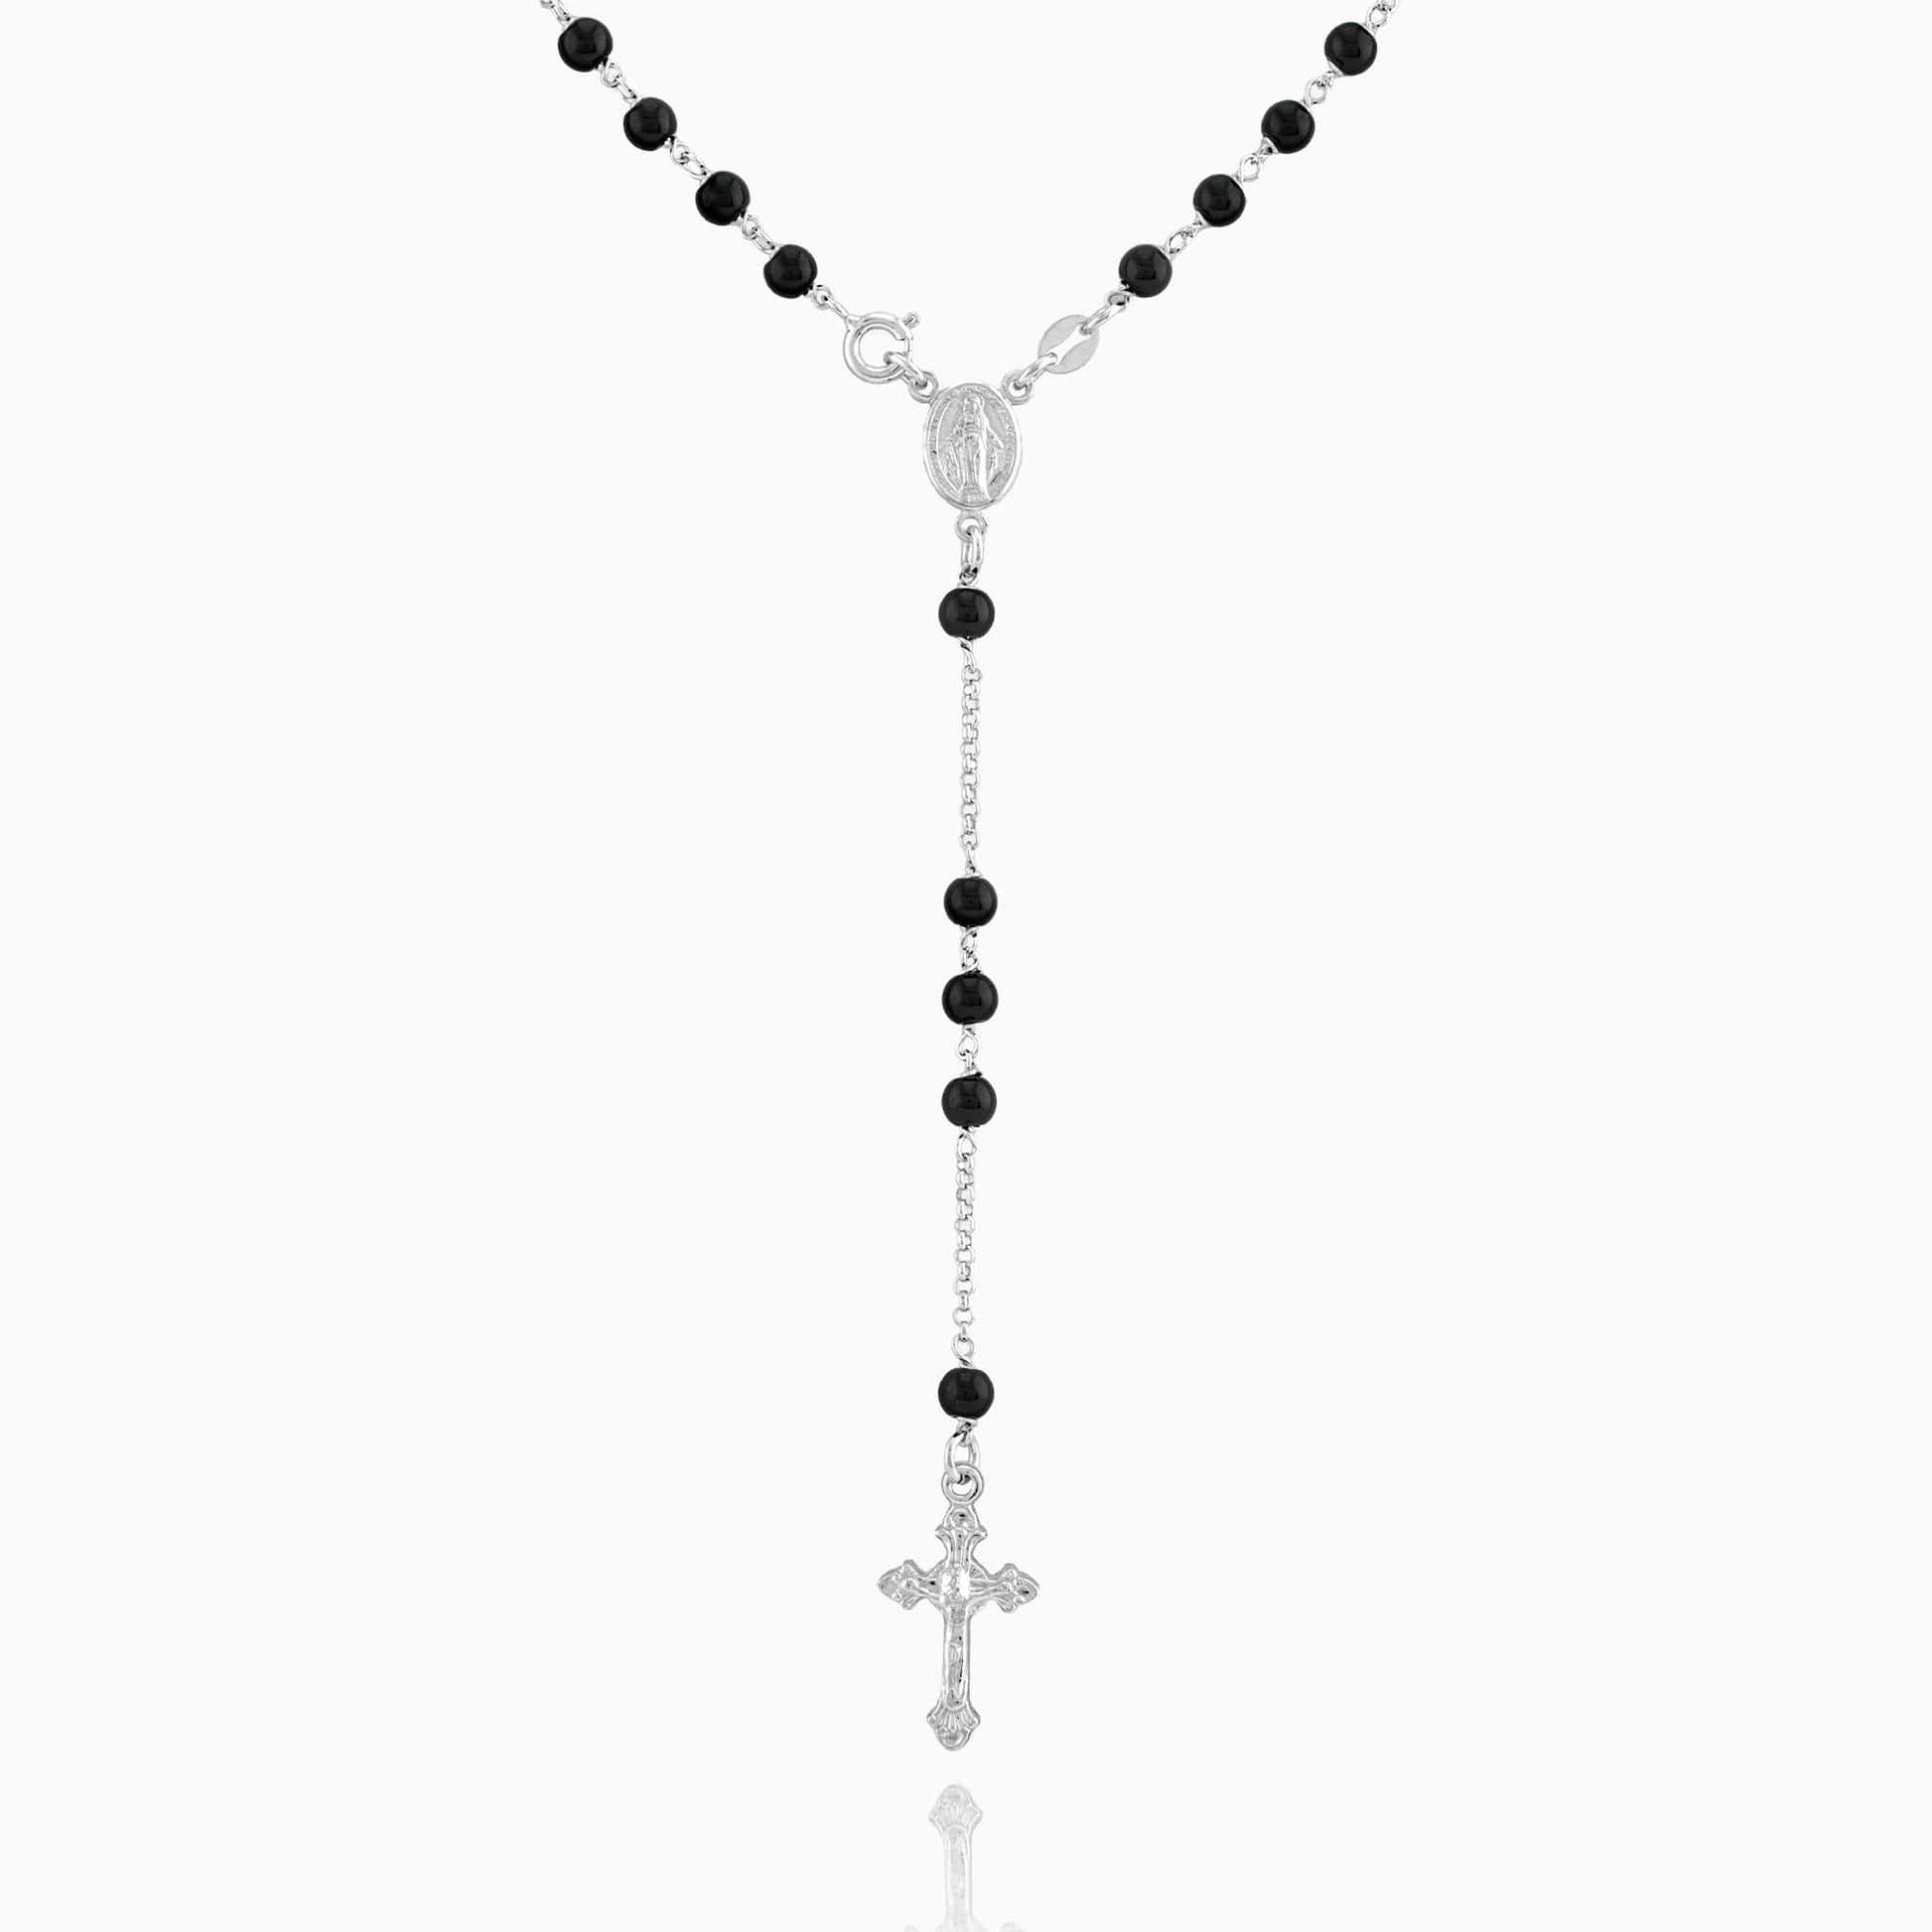 MONDO CATTOLICO Prayer Beads Rhodium / Cm 50 (19.7 in) MIRACULOUS MARY ROSARY 5 MM BLACK BEADS